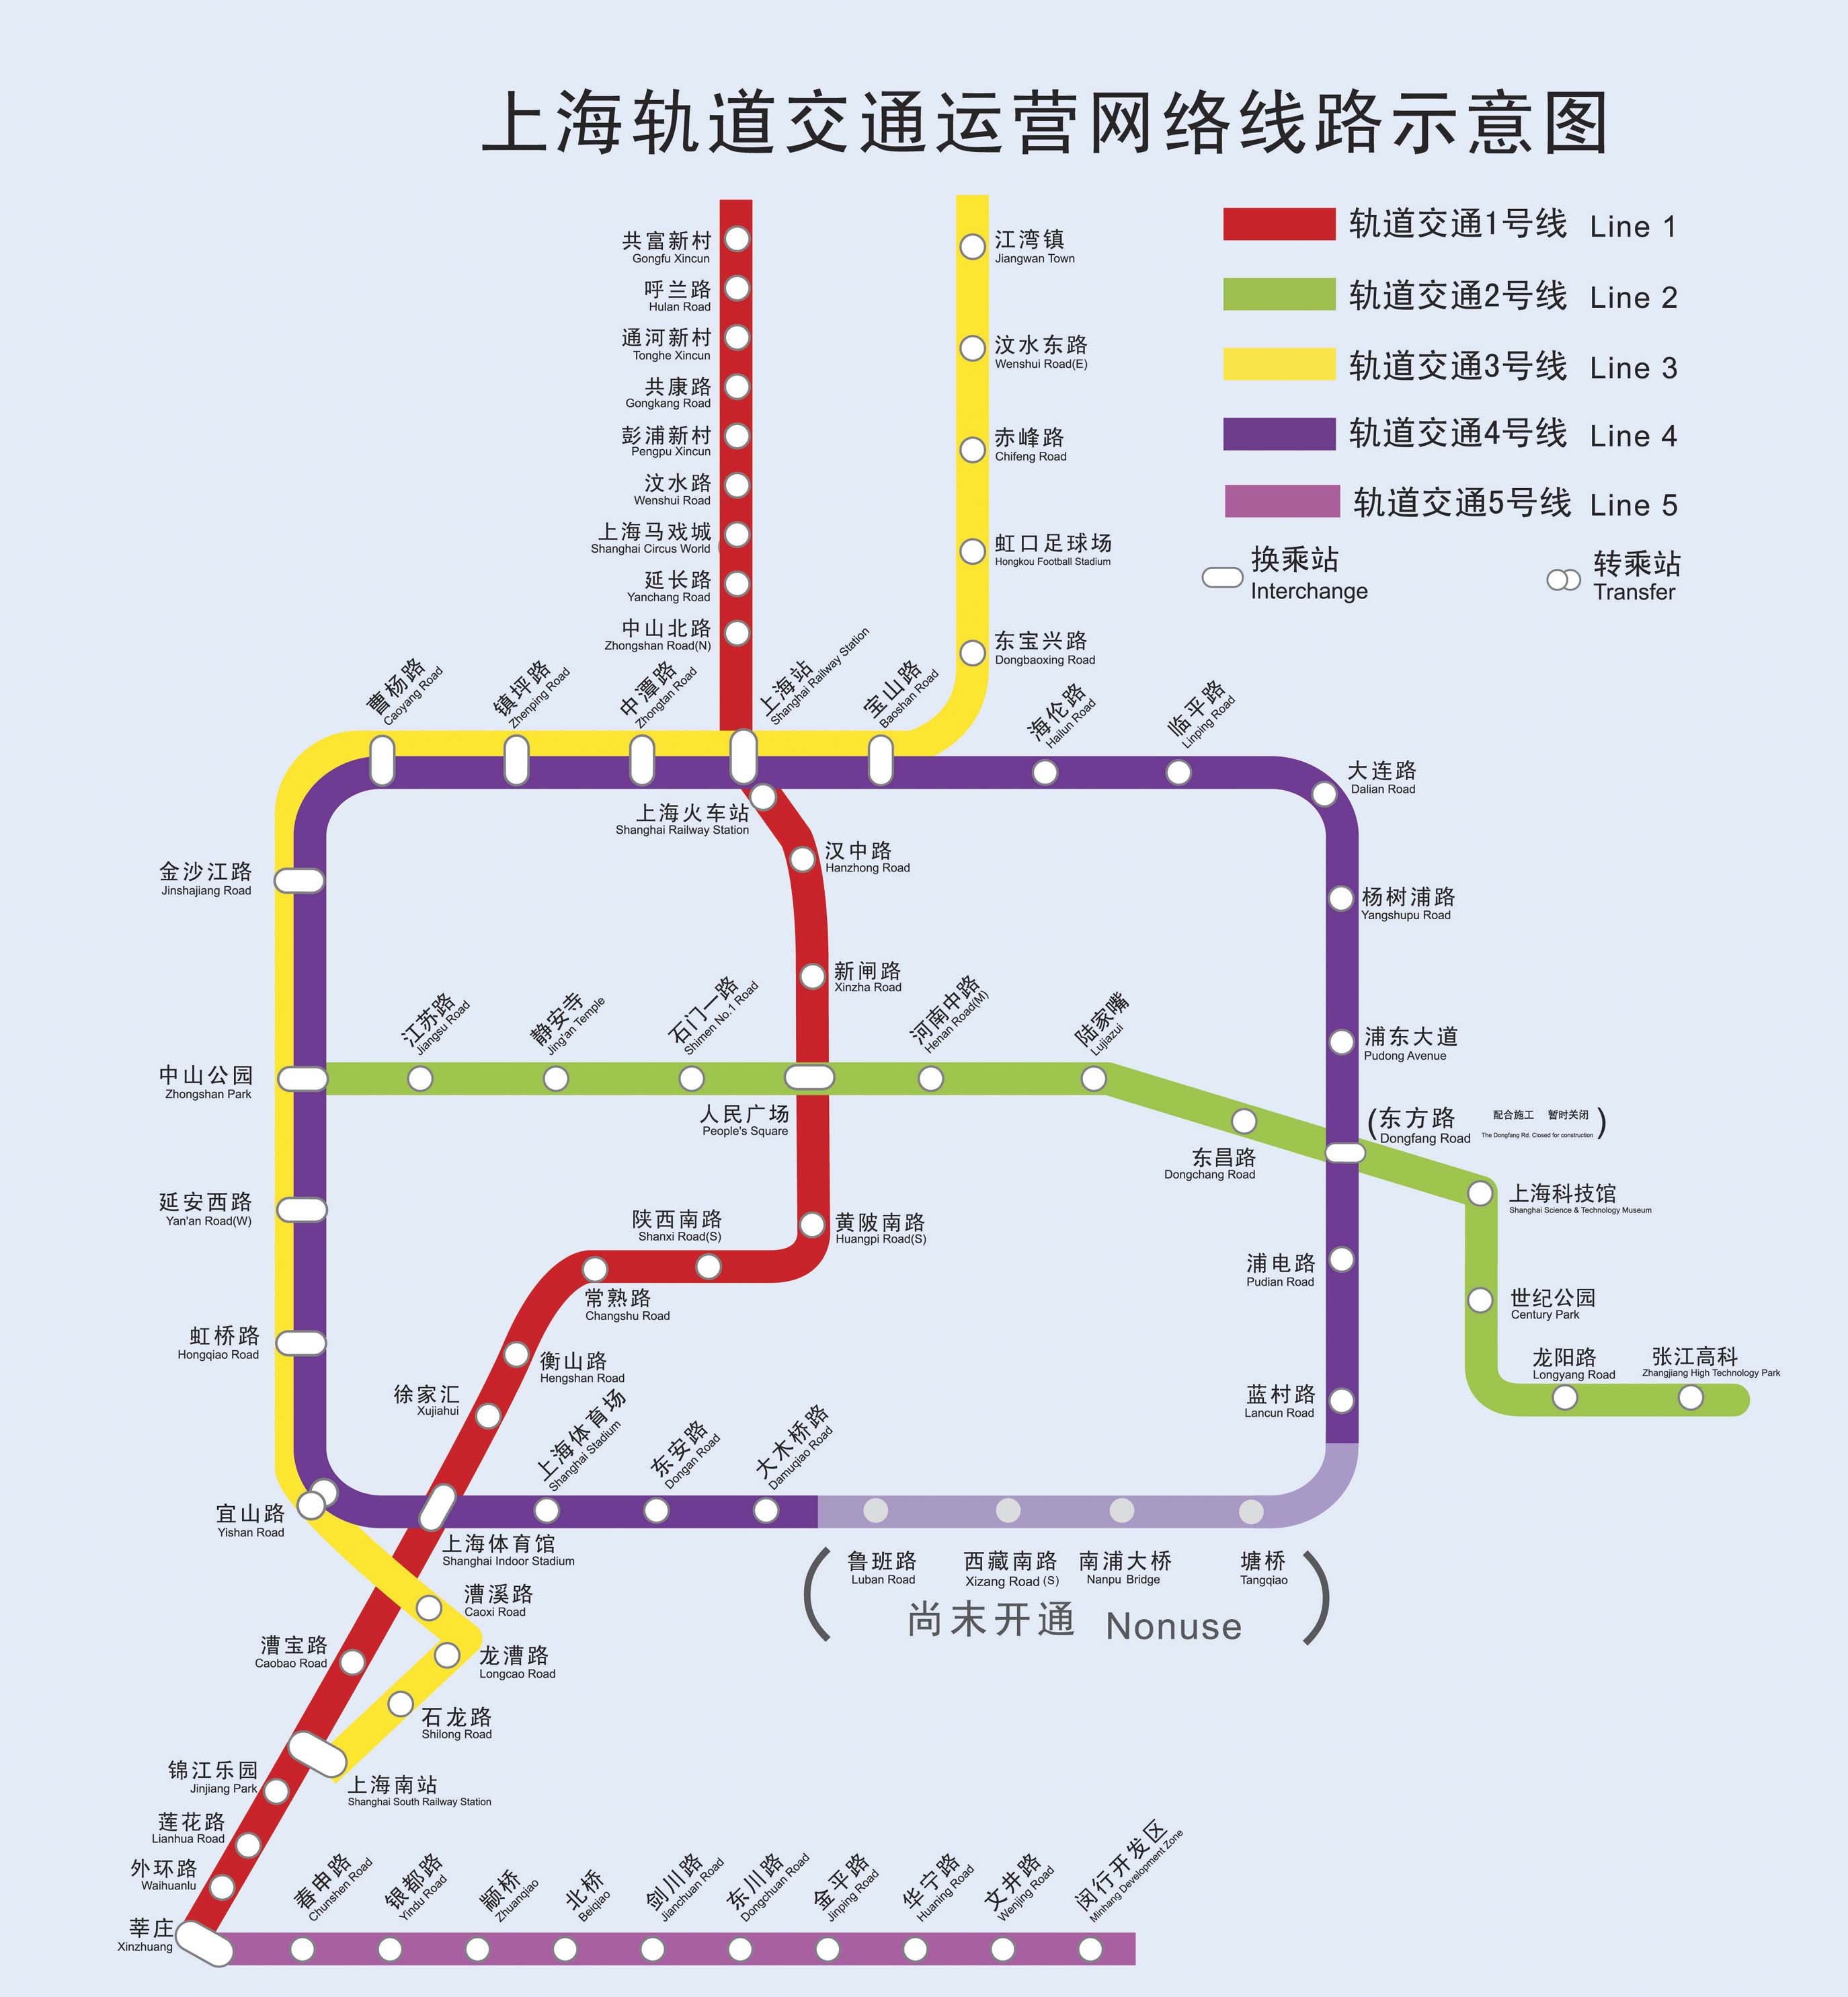 上海地铁站2号线路图图片